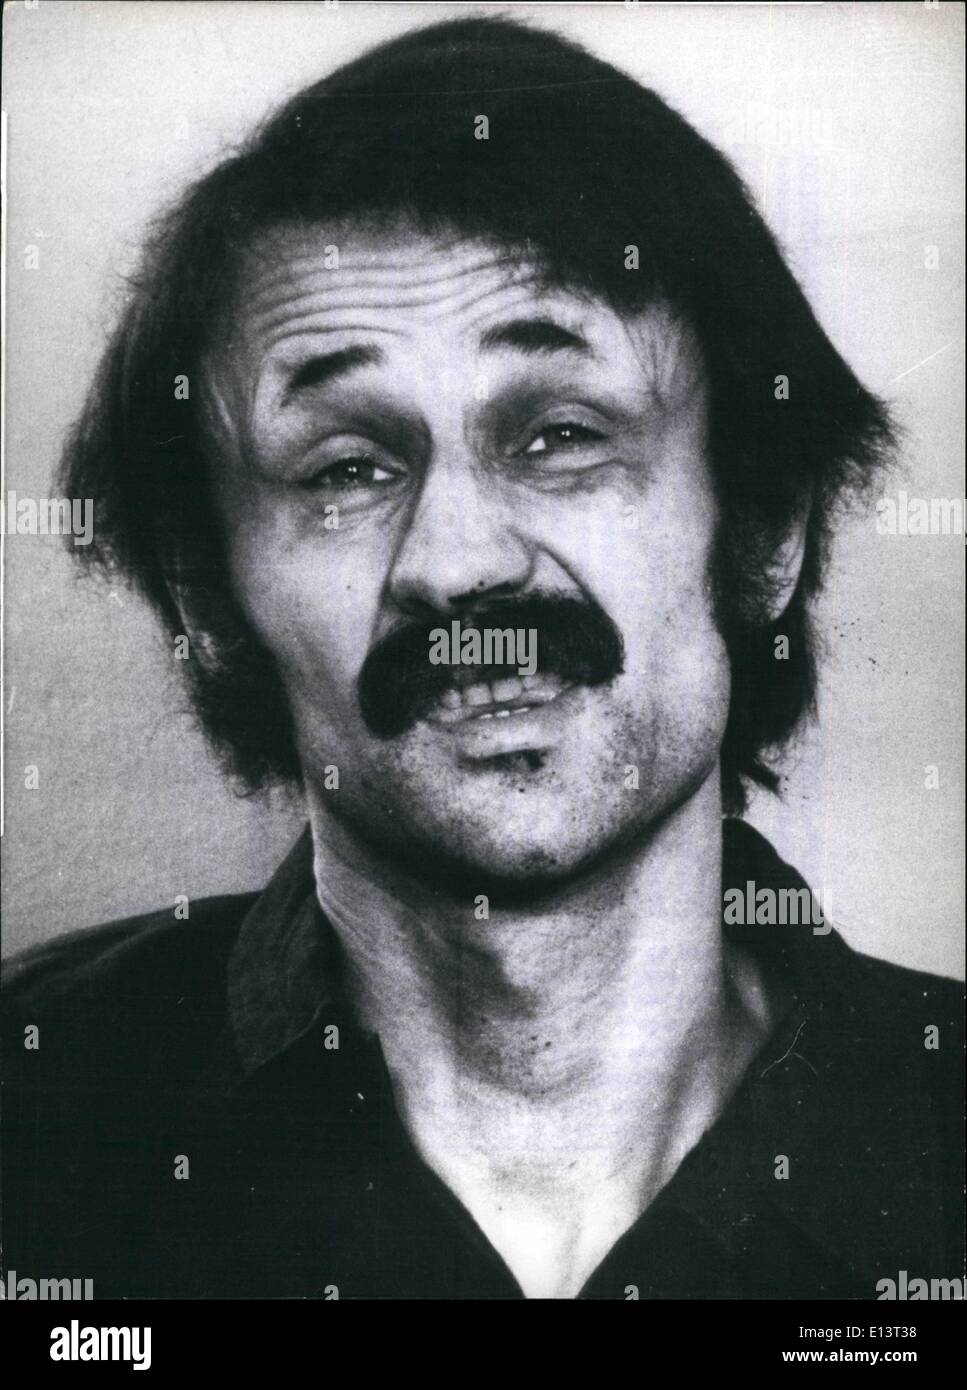 27 mar 2012 - ''Raf''- membro muore dopo due mesi - La fame - Sciopero : Holger Meins 33 , membro dell'anarchico ''Raf'' Foto Stock